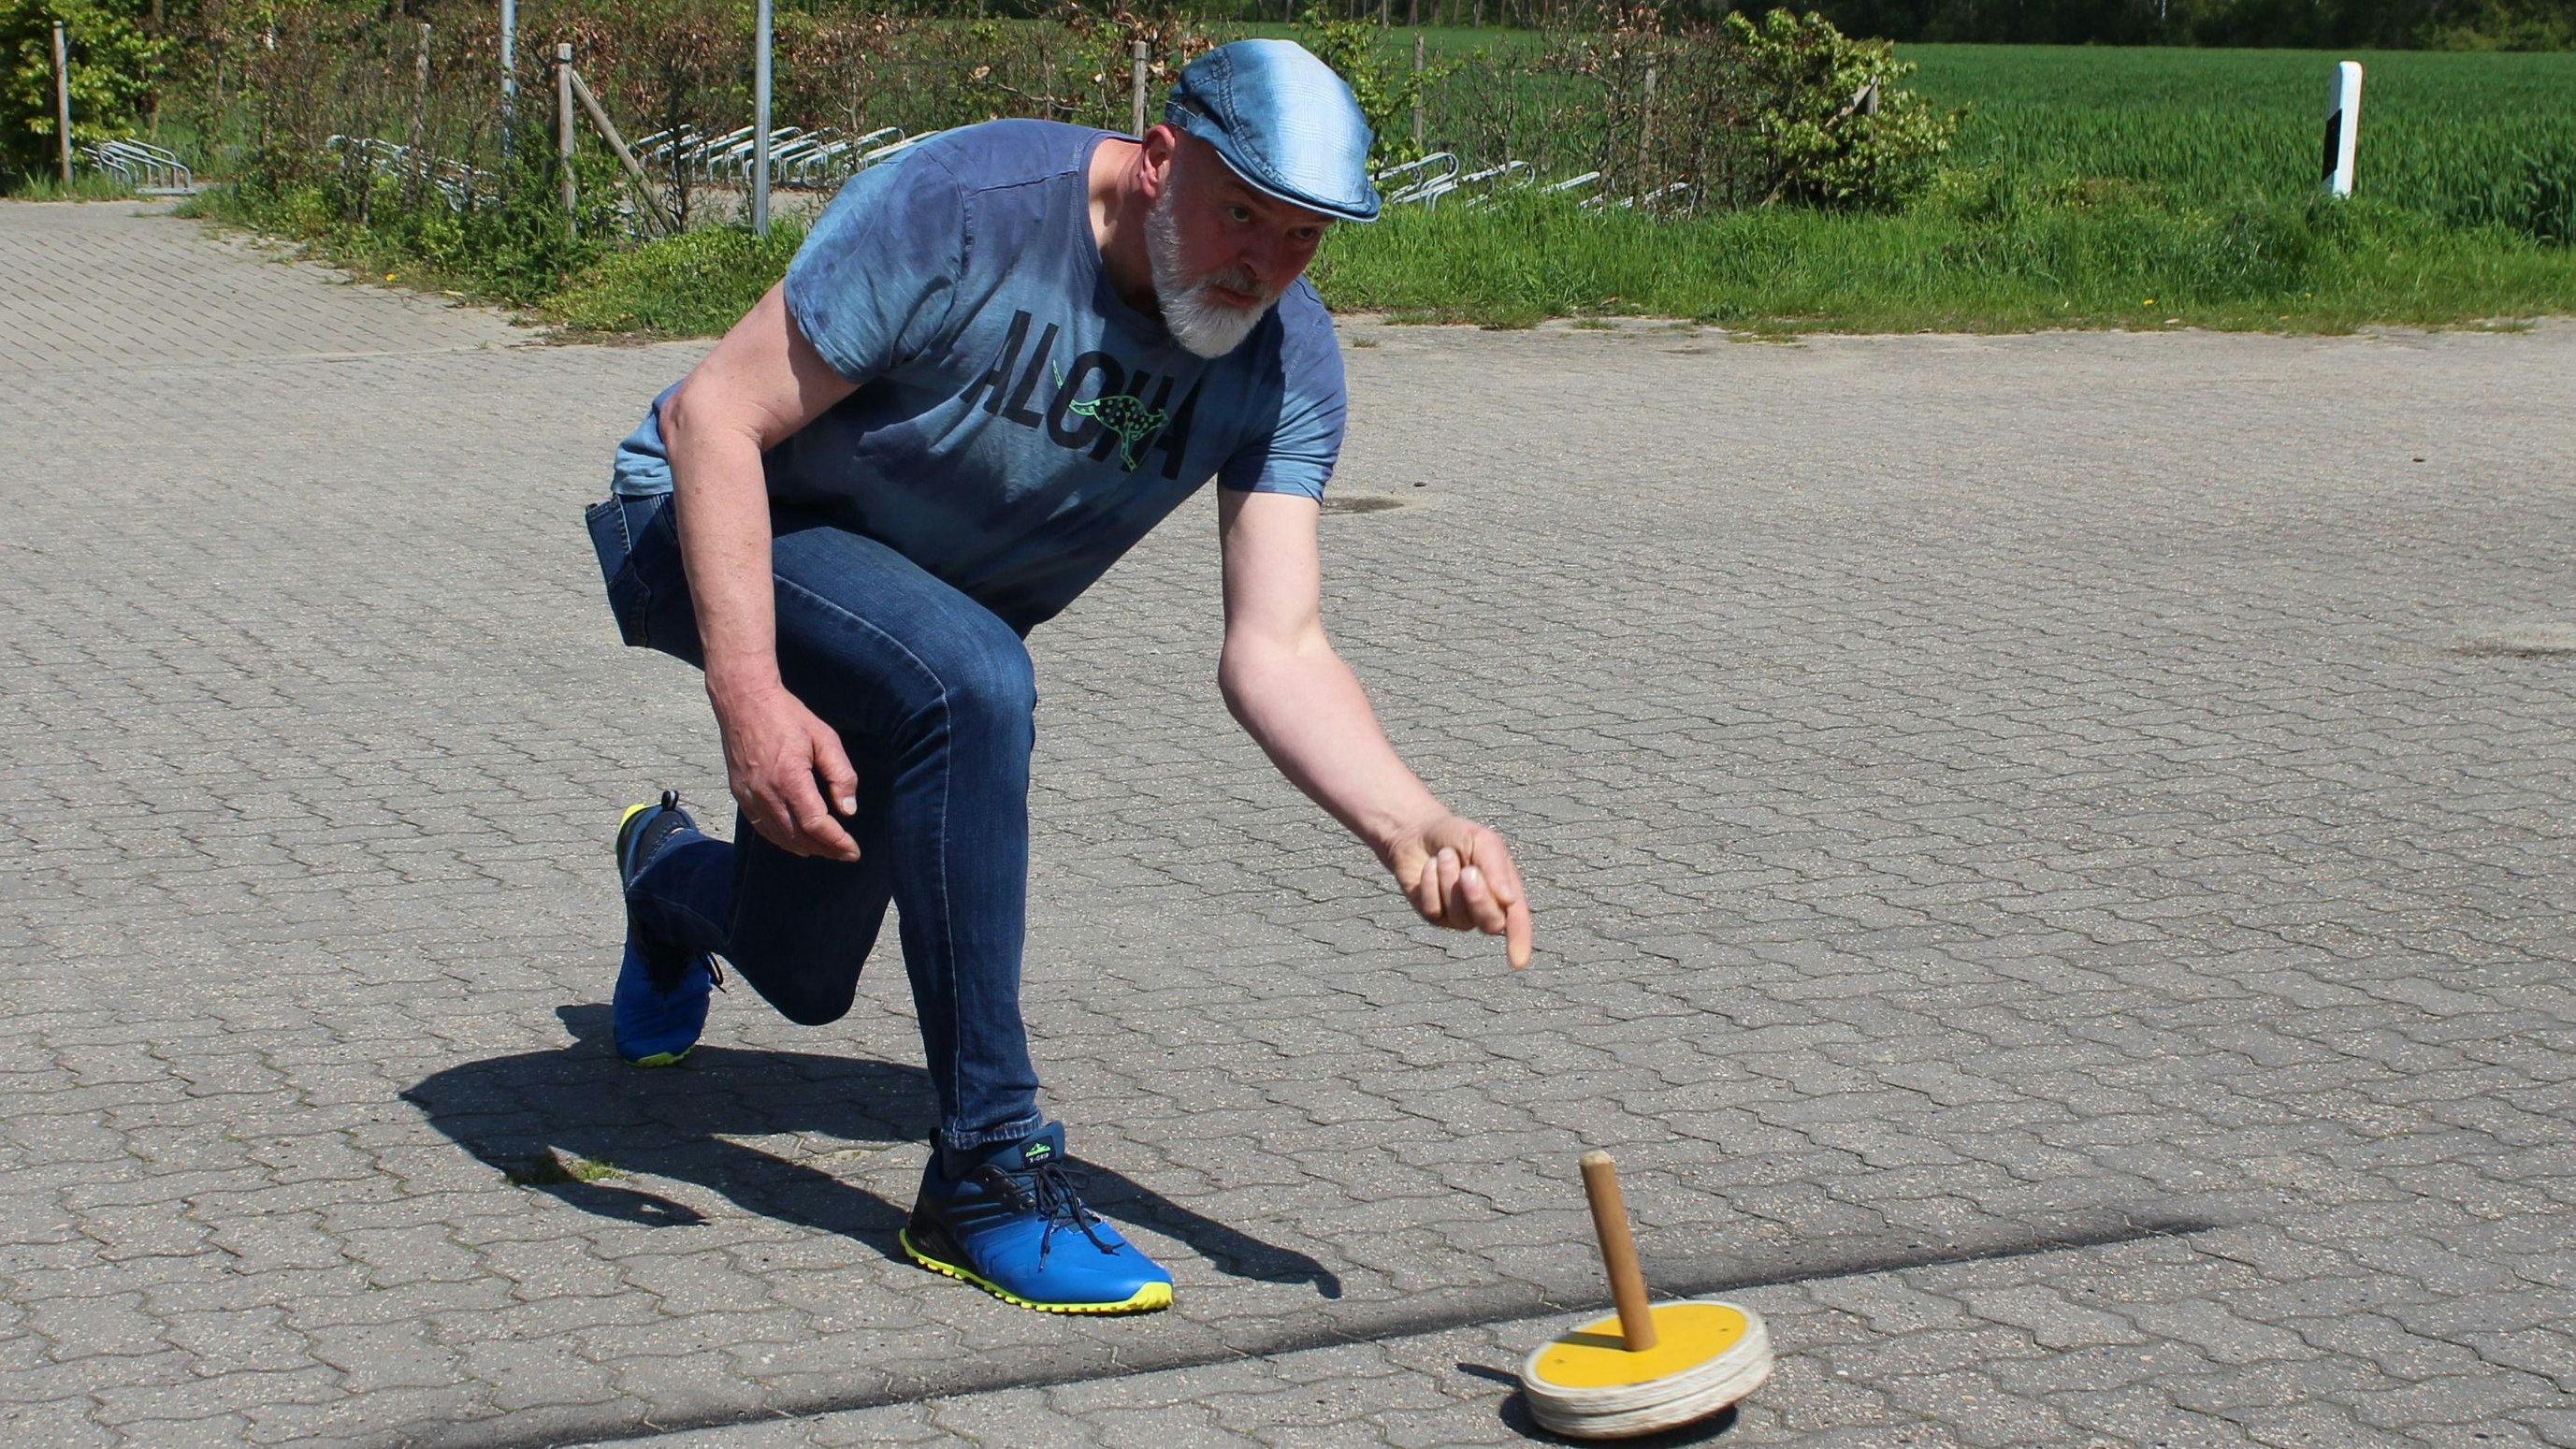 Die richtige Technik: Die lernt man recht schnell, meint Karsten Lammers über das Sommer-Stockschießen. Foto: Heinzel